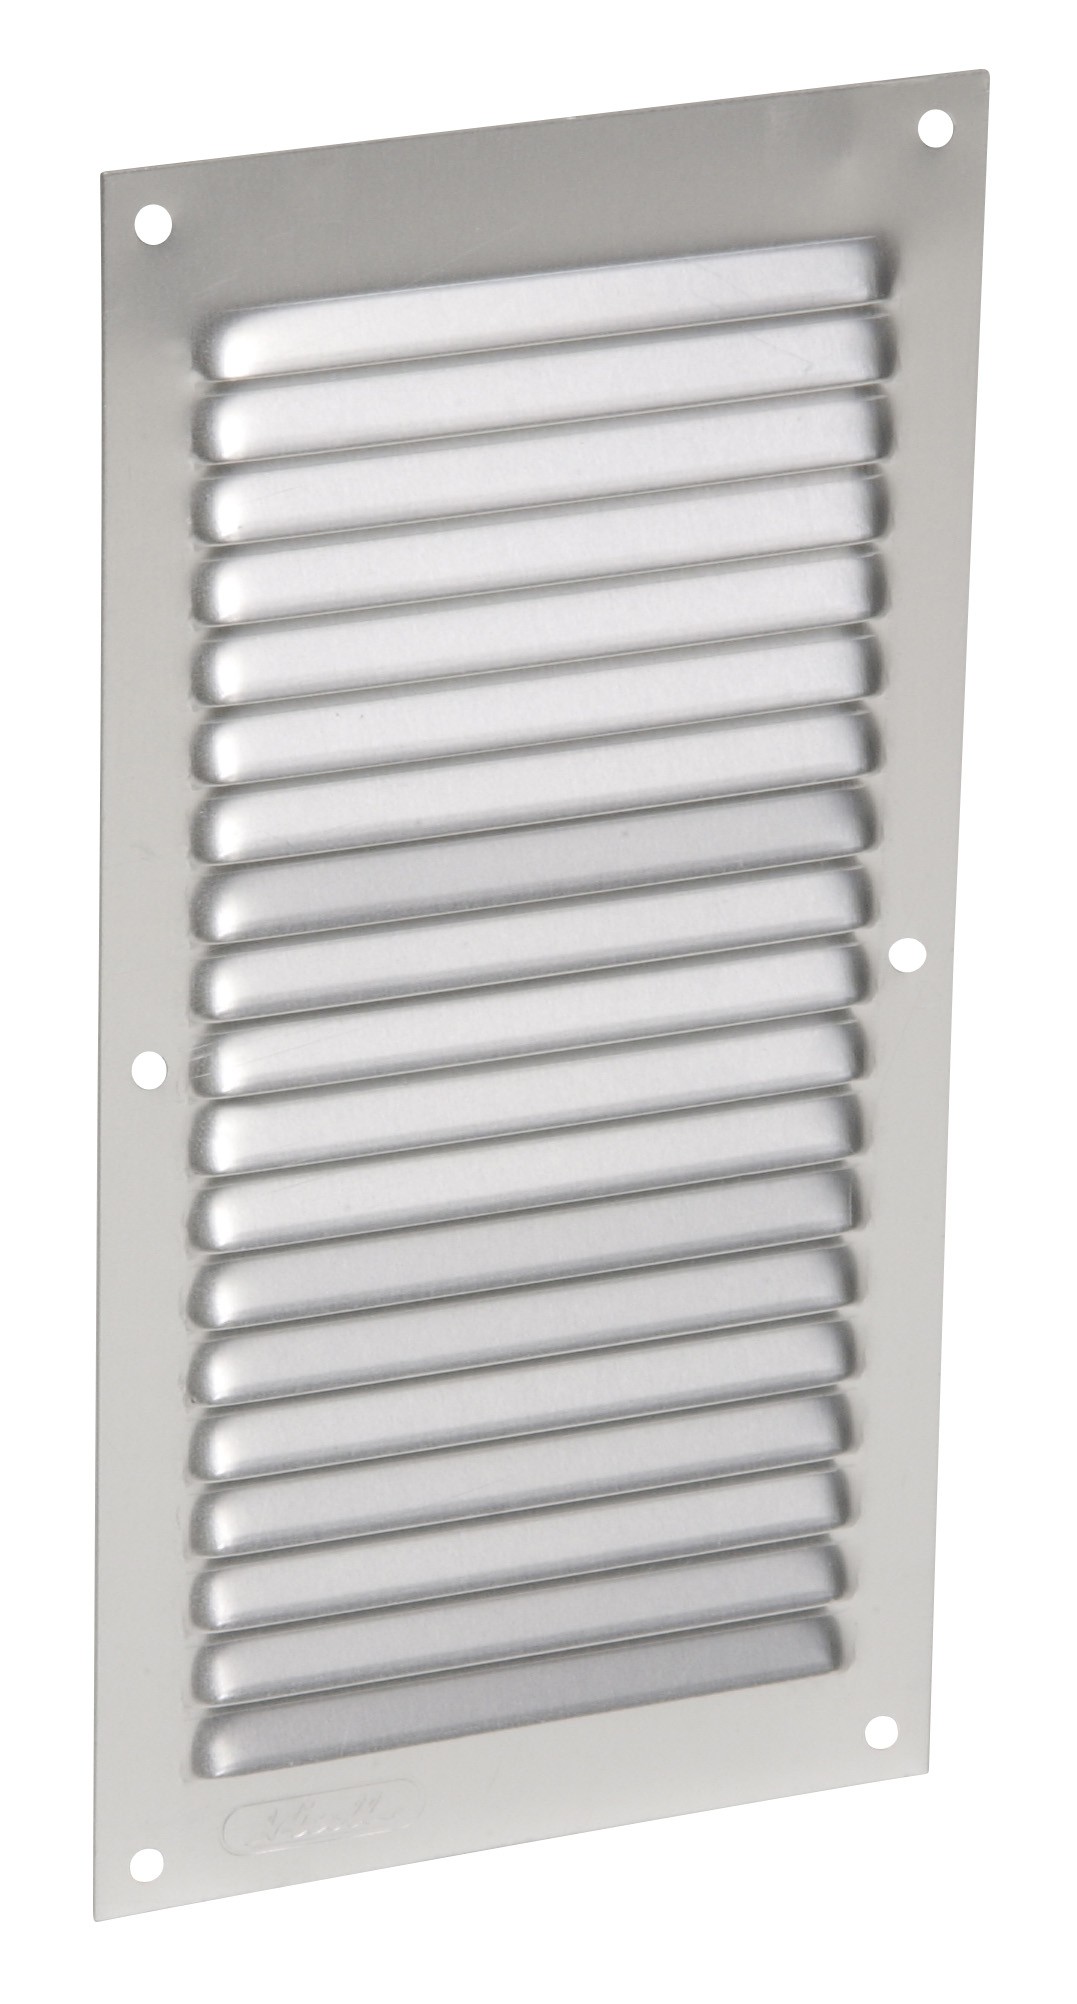 Aluminio anodizado gris con mosquitera: vertical rectangular 20X10